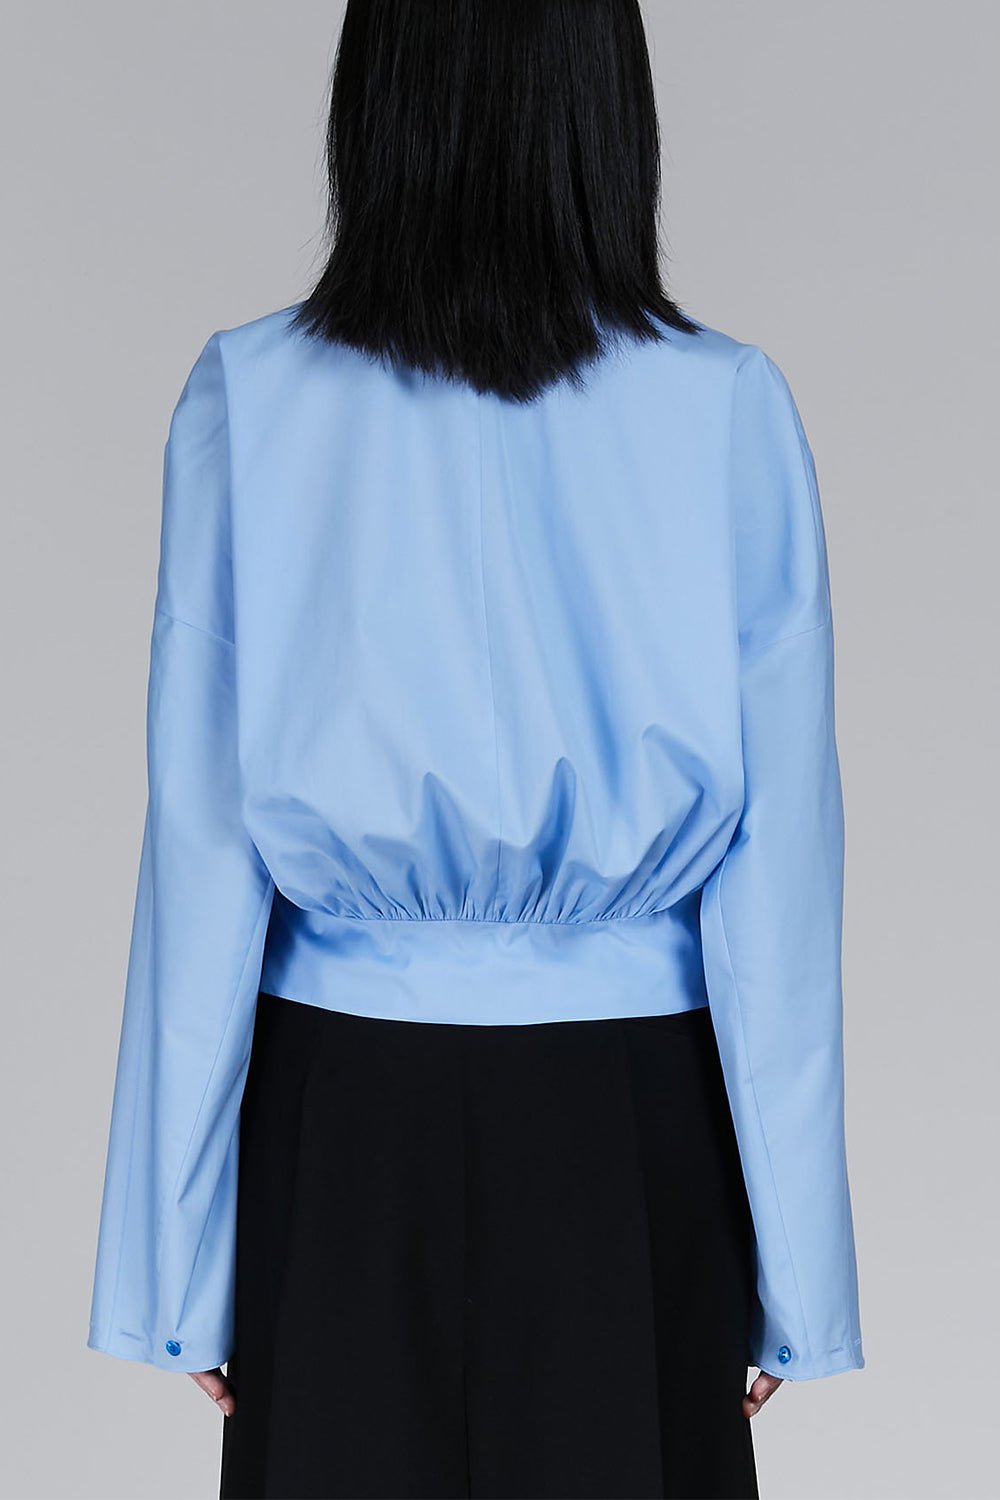 MARNI-Gathered Shirt - Iris Blue-